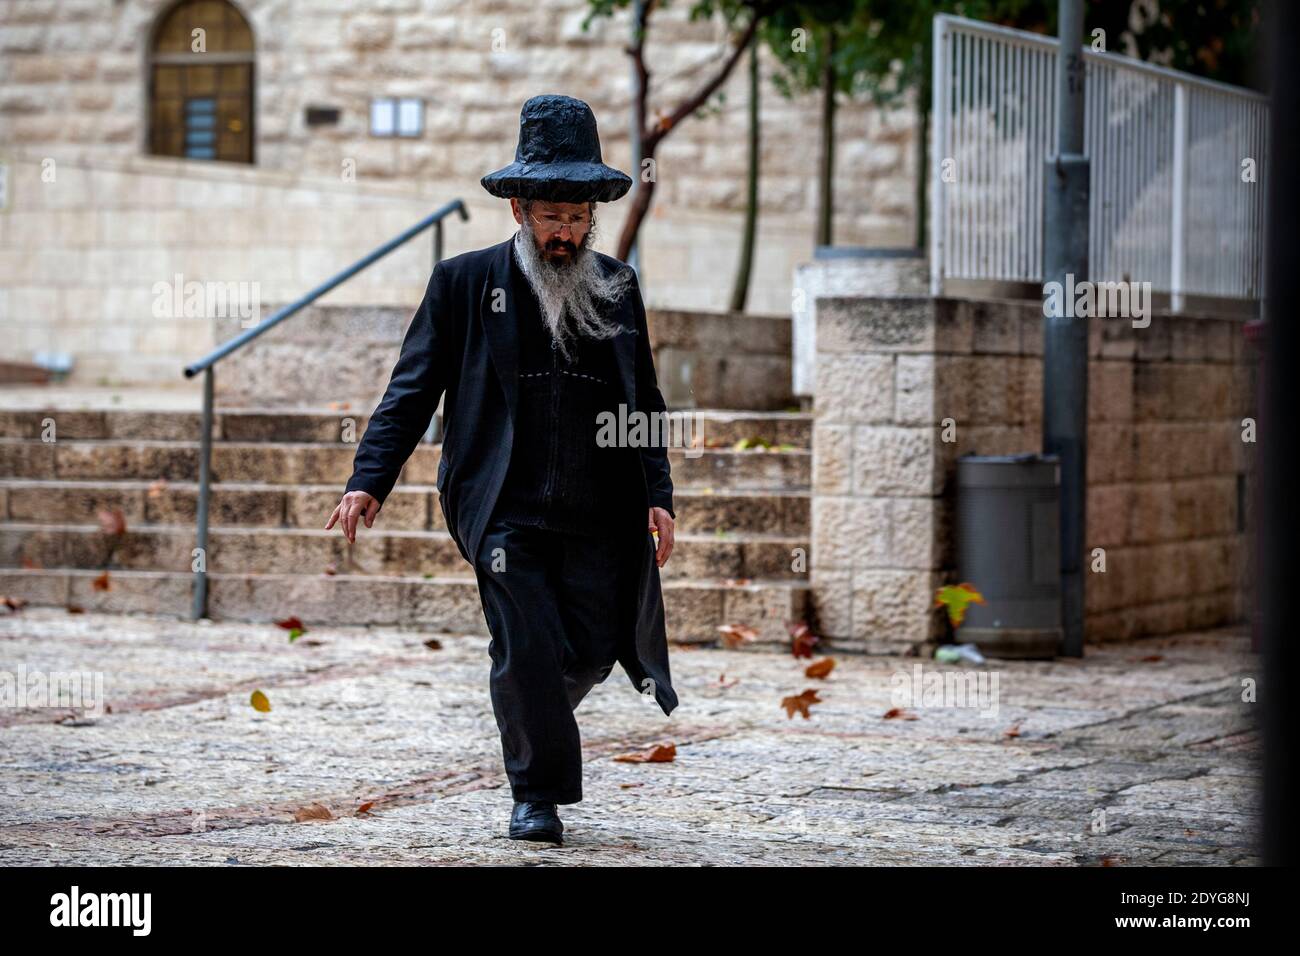 Orthodoxe Juden gehen entlang einer Straße in der Altstadt von Jerusalem Stadt im jüdischen Viertel während eines Regens, Israel Stockfoto